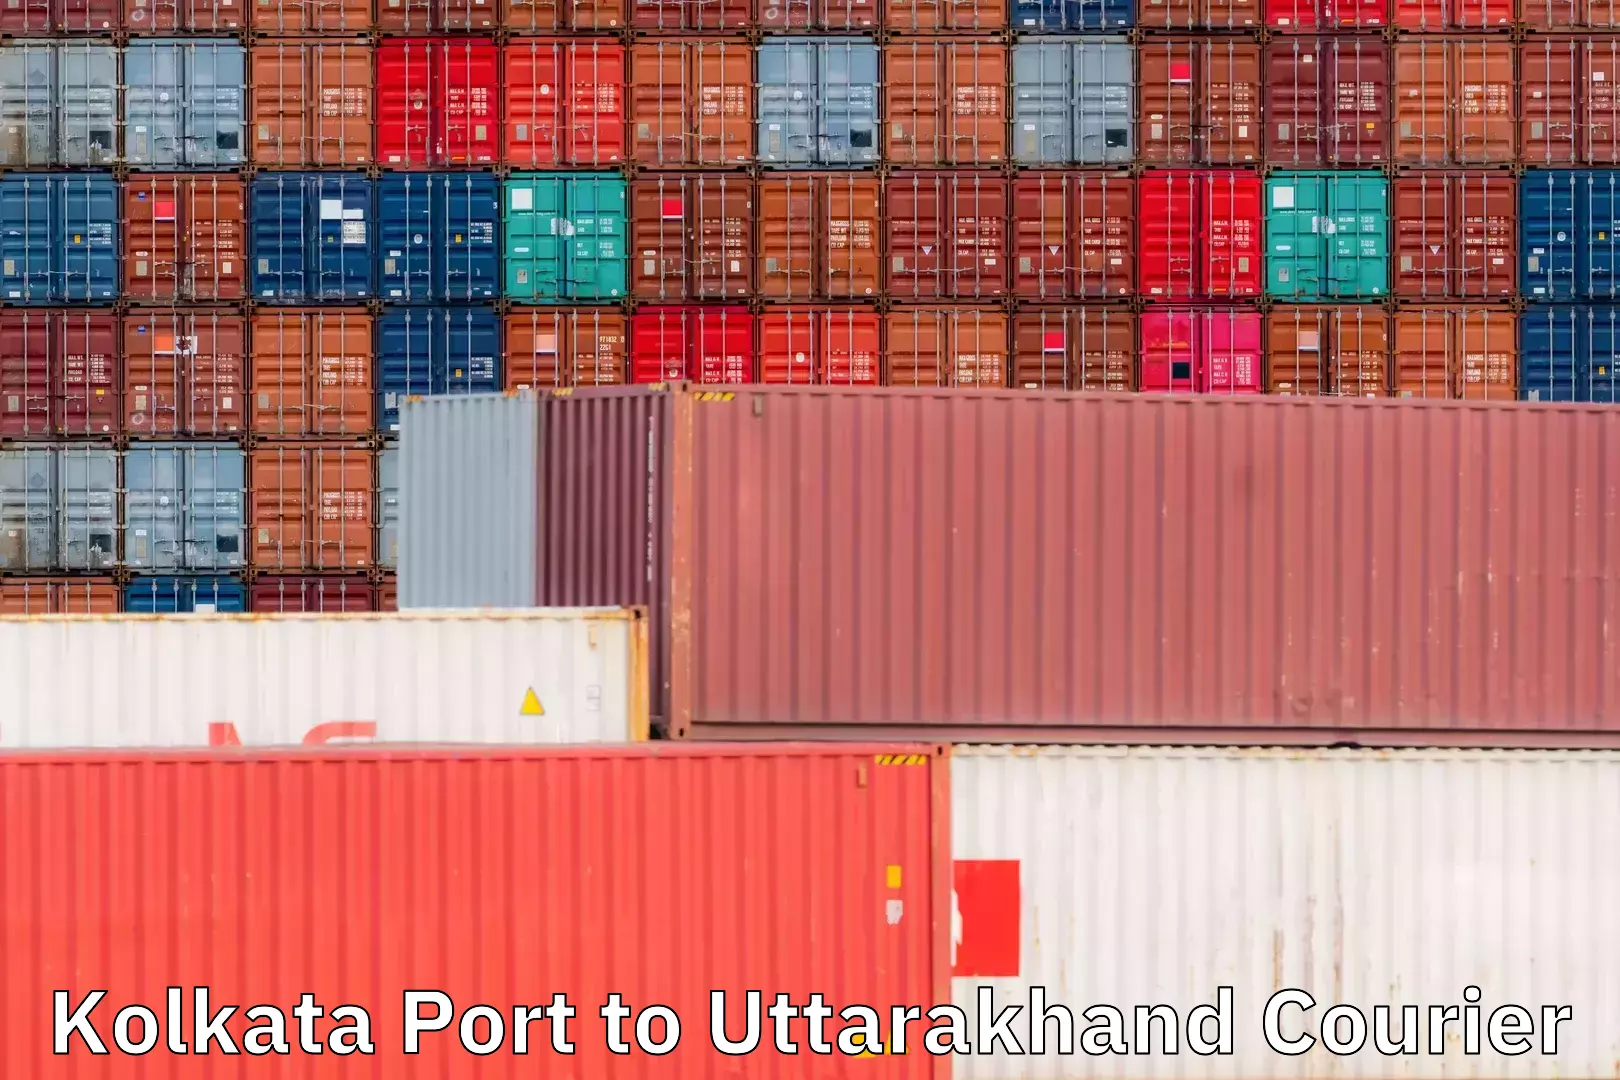 Global courier networks Kolkata Port to Uttarakhand